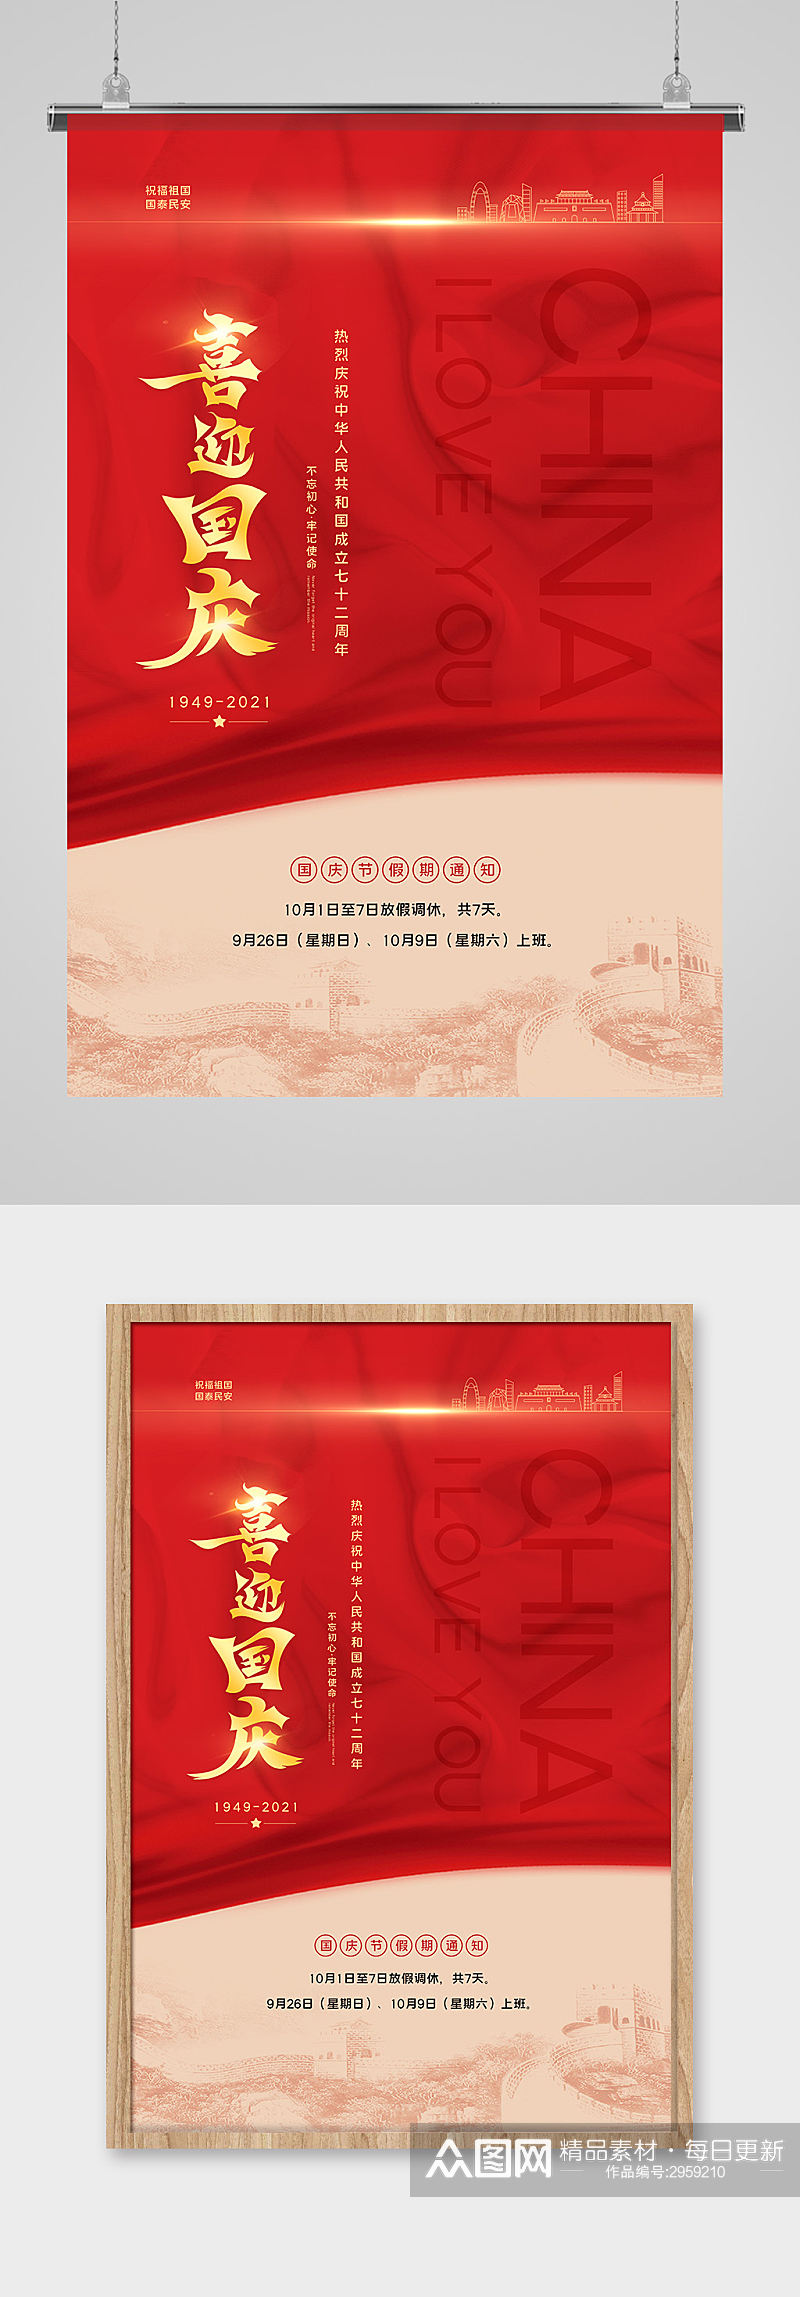 红色喜庆喜迎国庆海报设计素材